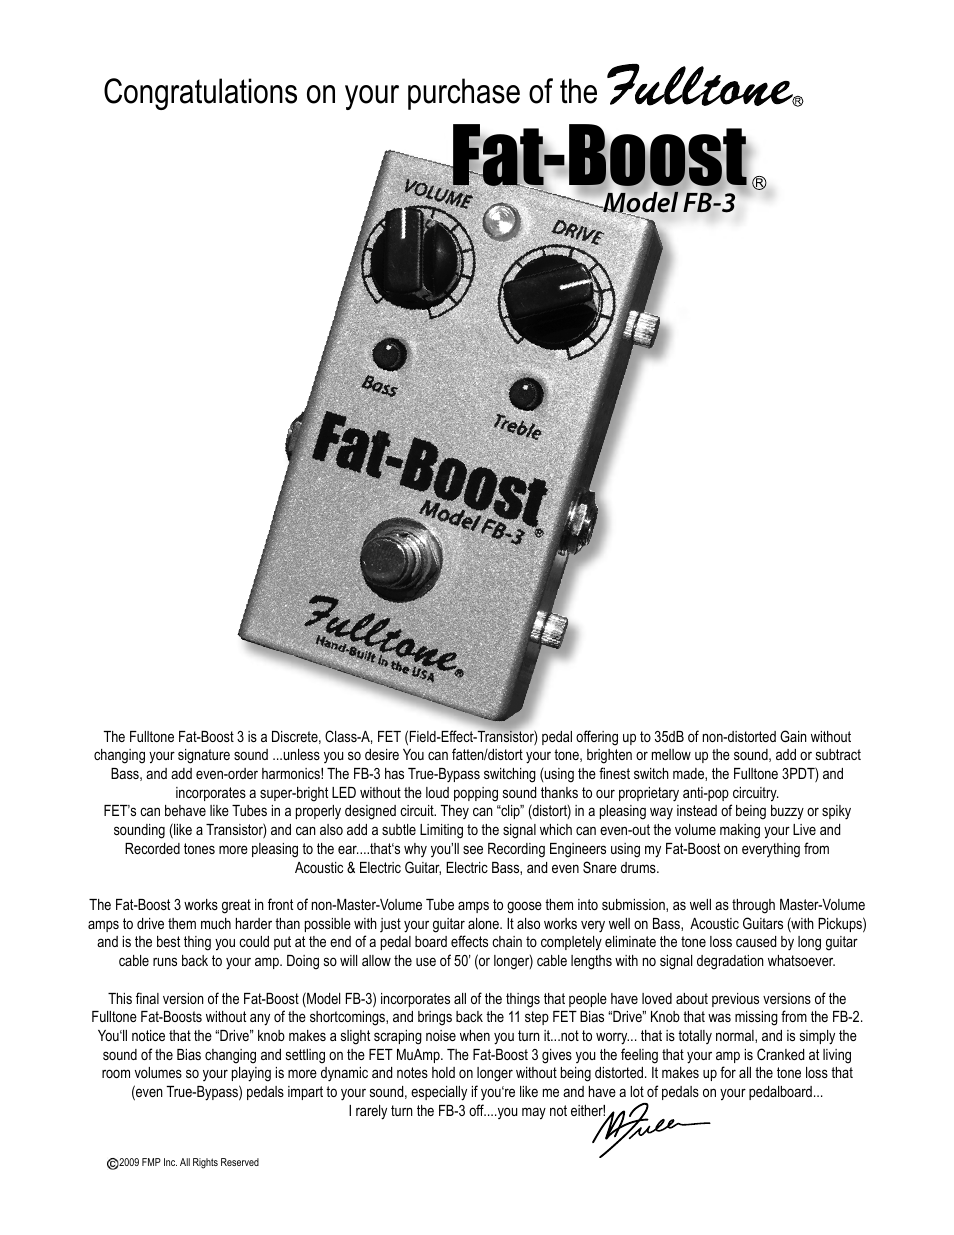 Fat-Boost FB-3